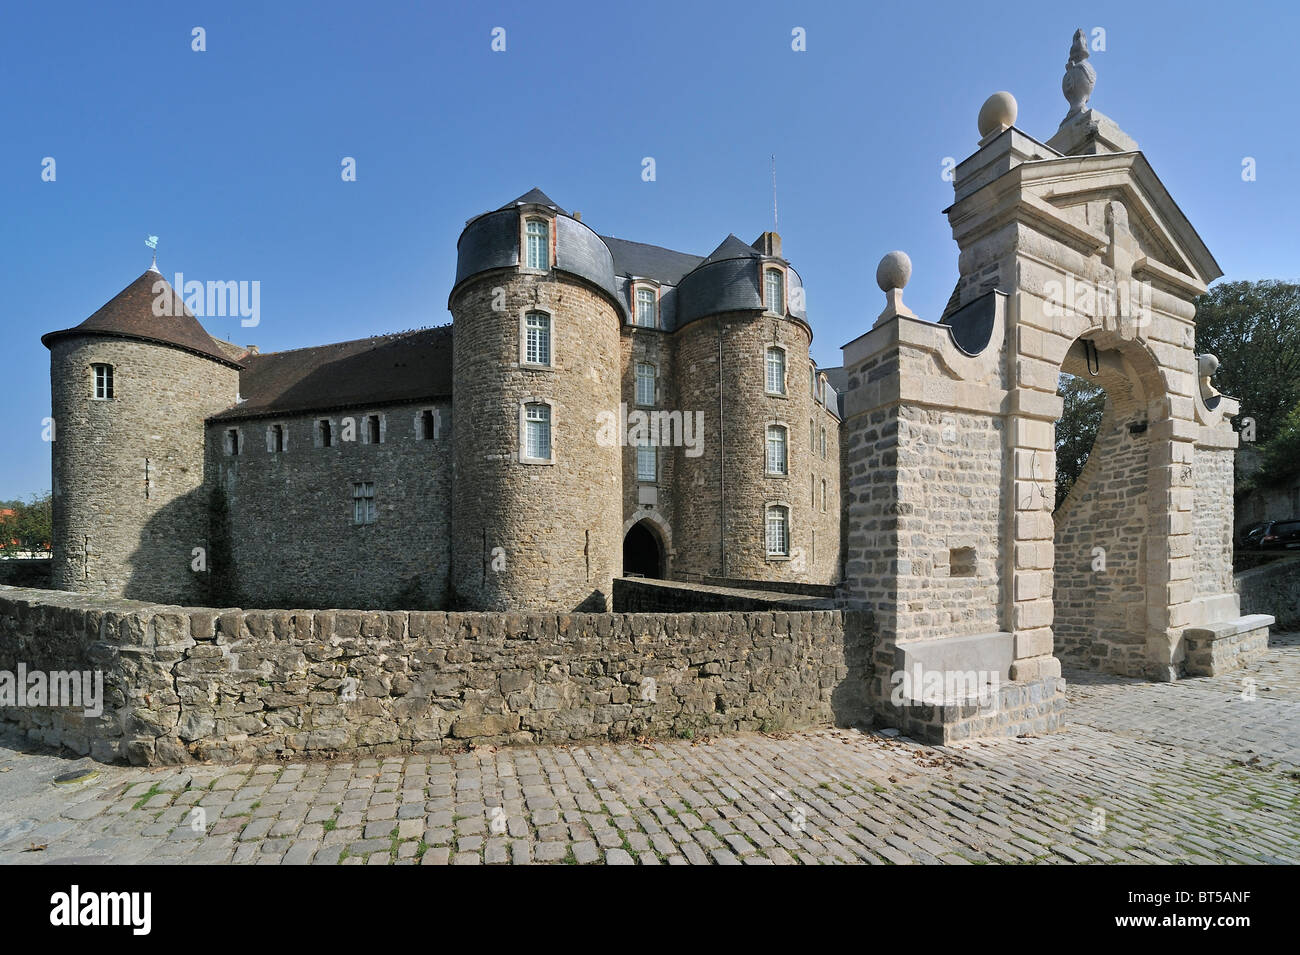 Le château / Château Musée de Boulogne-sur-Mer, France Banque D'Images